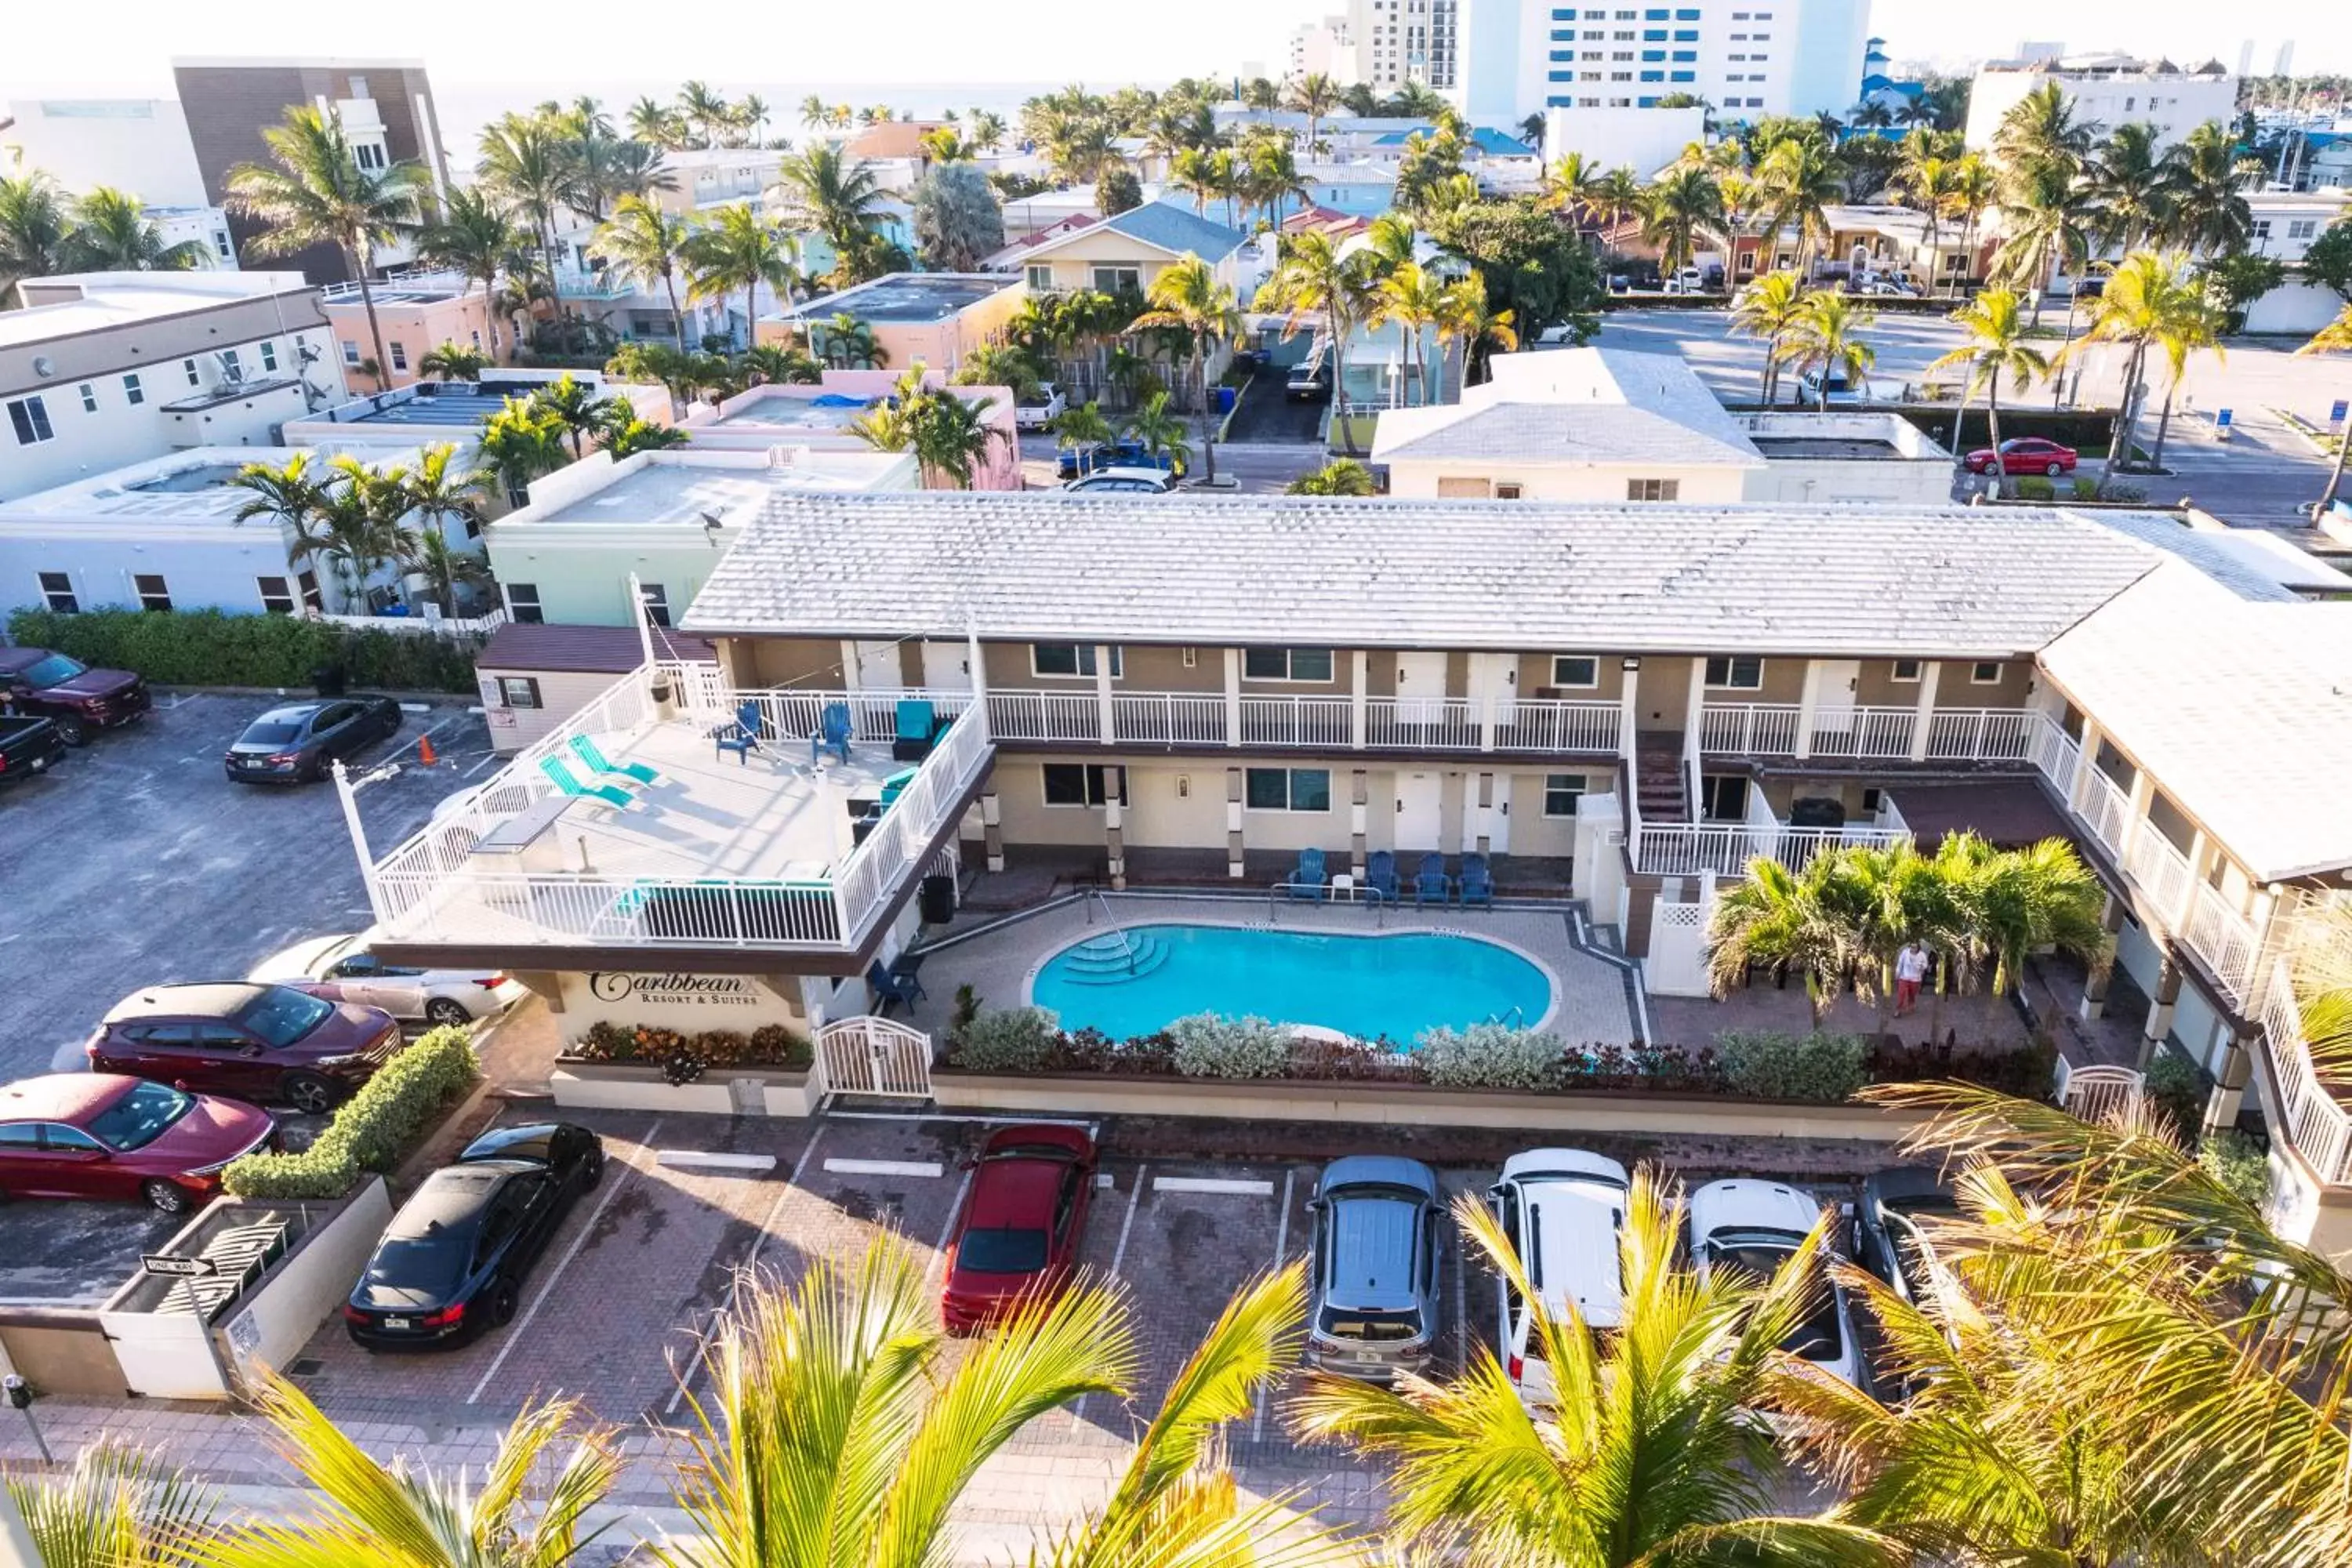 Property building, Bird's-eye View in Caribbean Resort Suites